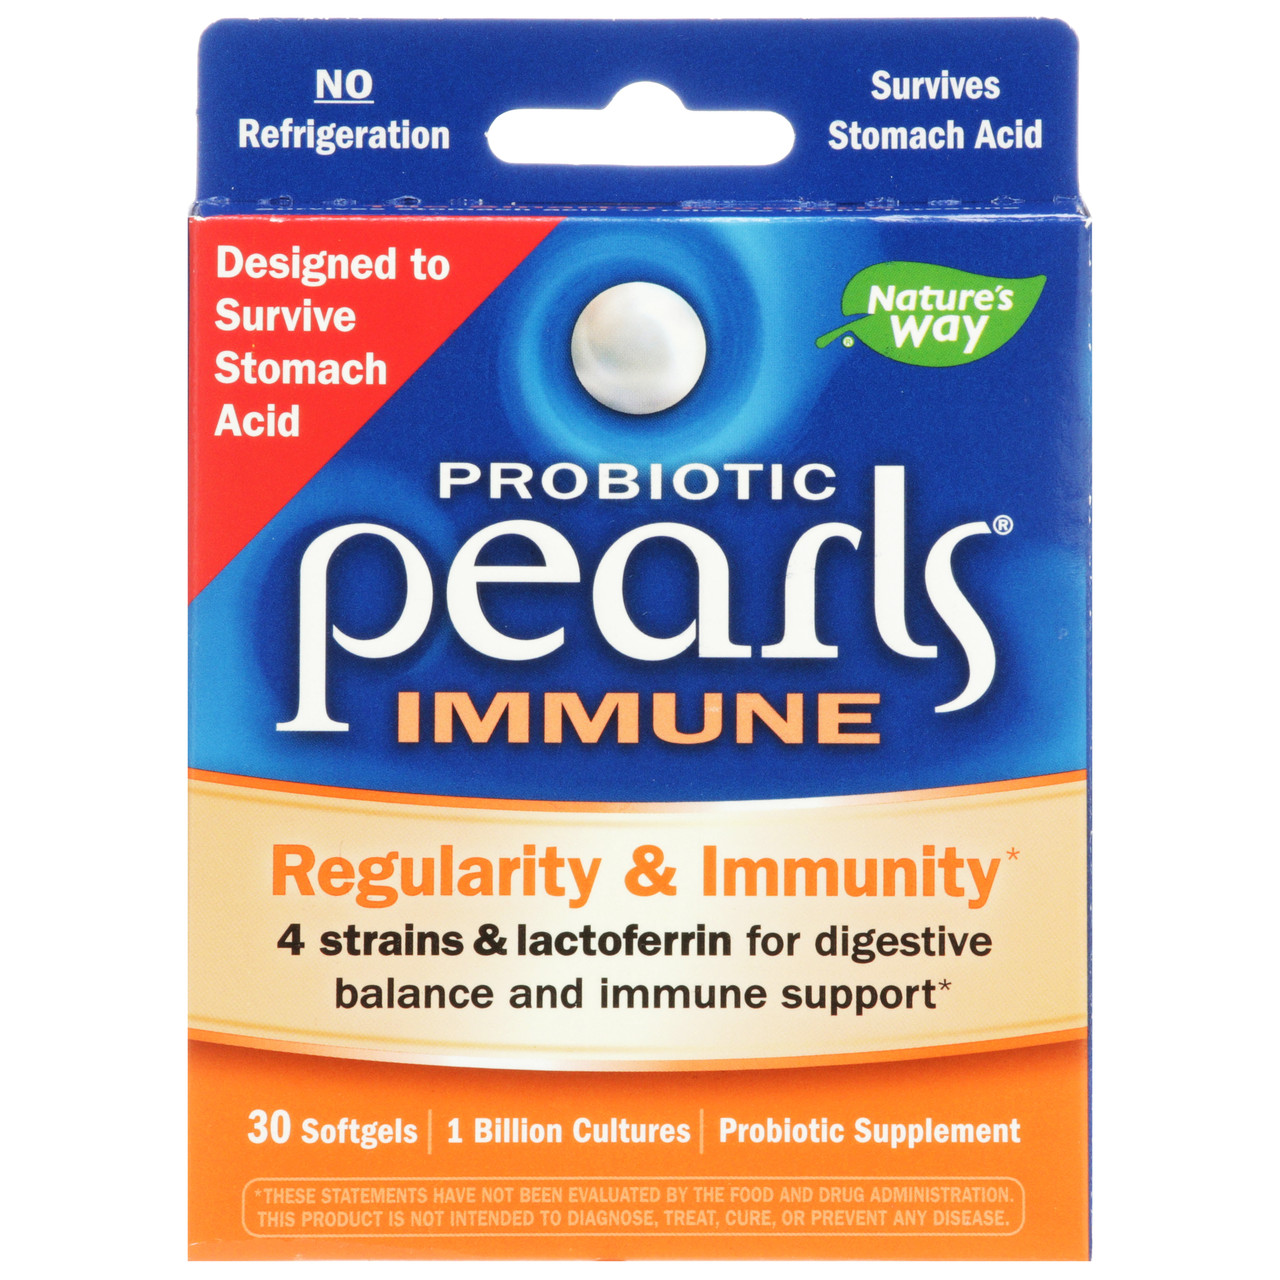 Pearls Immune 30 Capsules